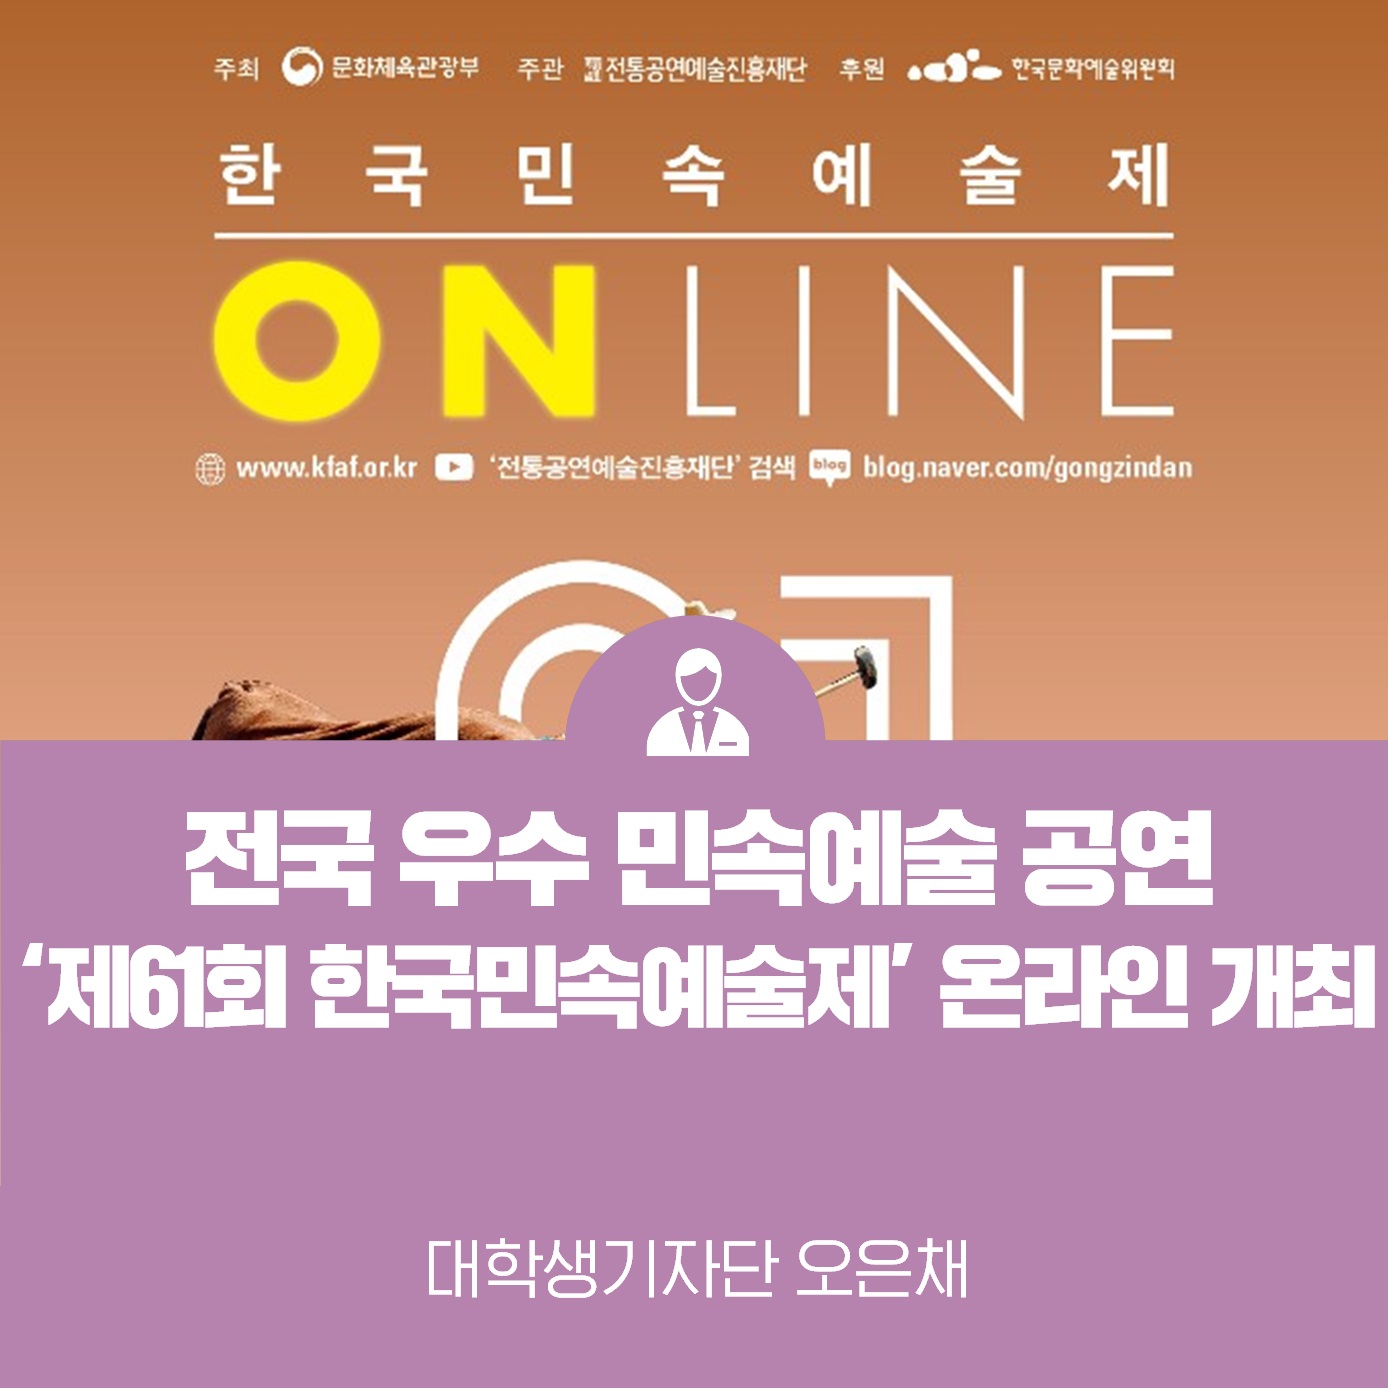 제61회 한국민속예술제 온라인 개최 <전국 우수 민속예술 공연>